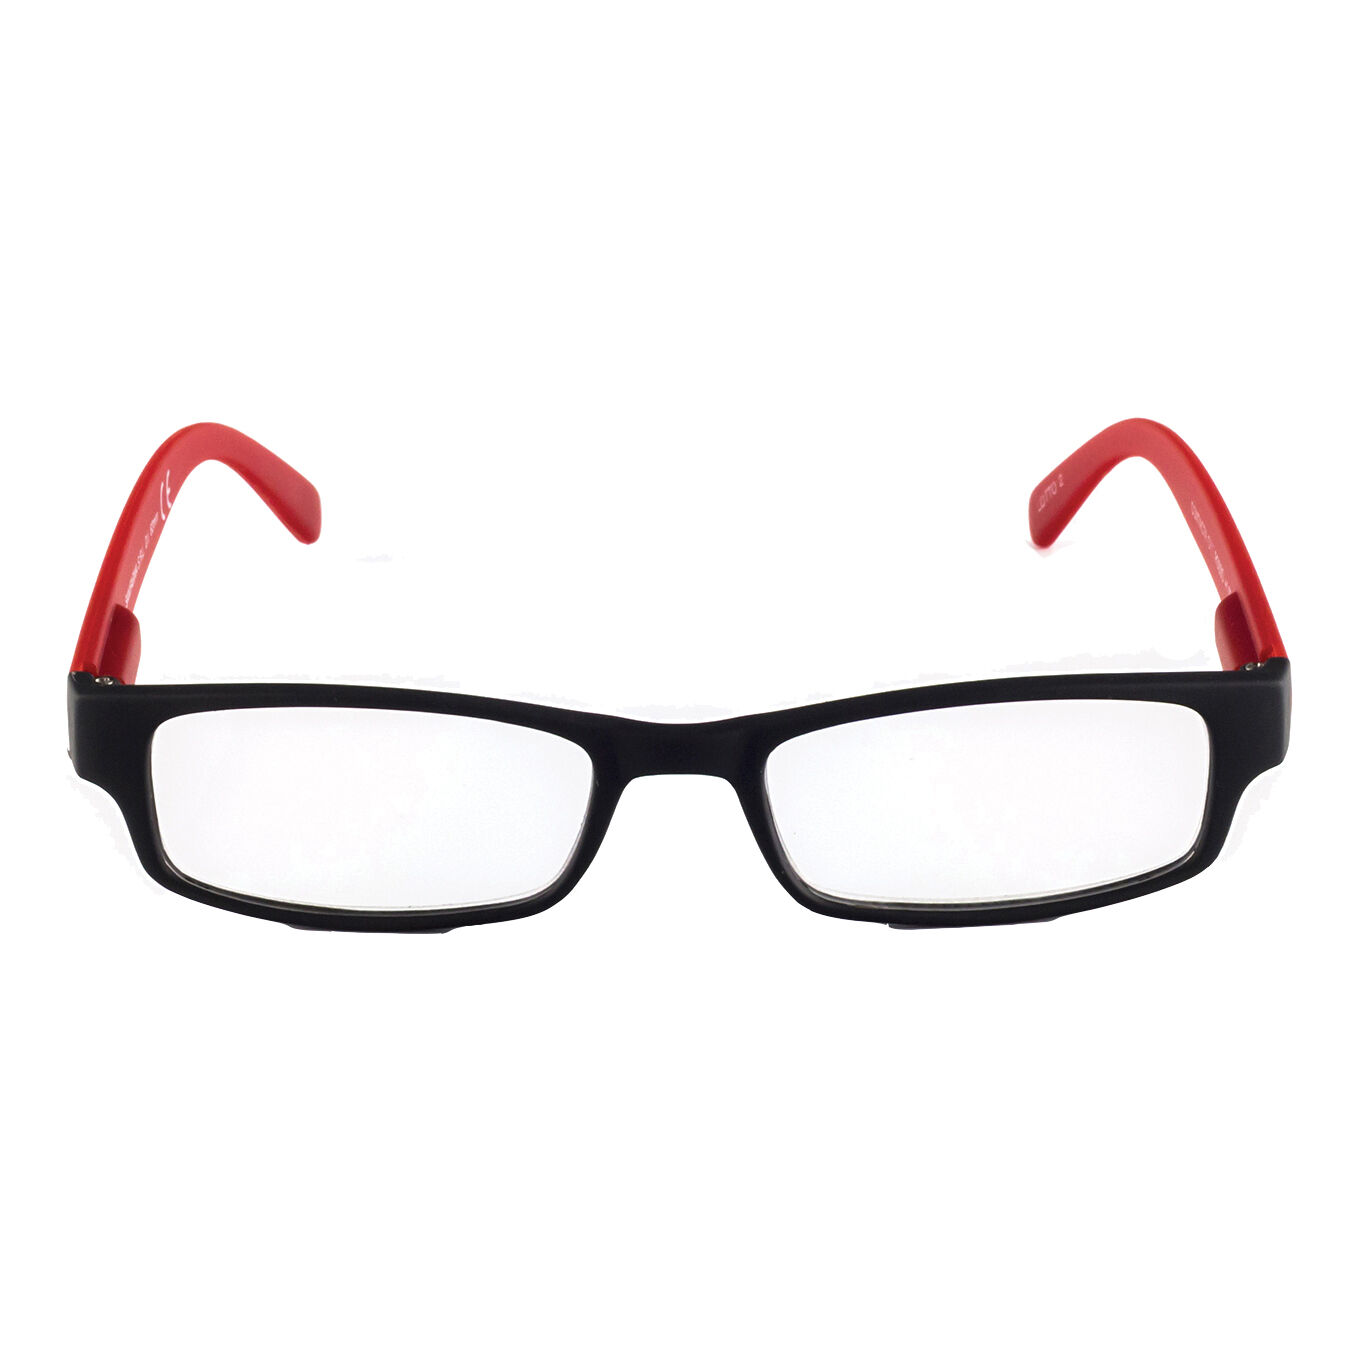 CONTACTA one occhiali premontati per presbiopia rosso +3,00 1 paio